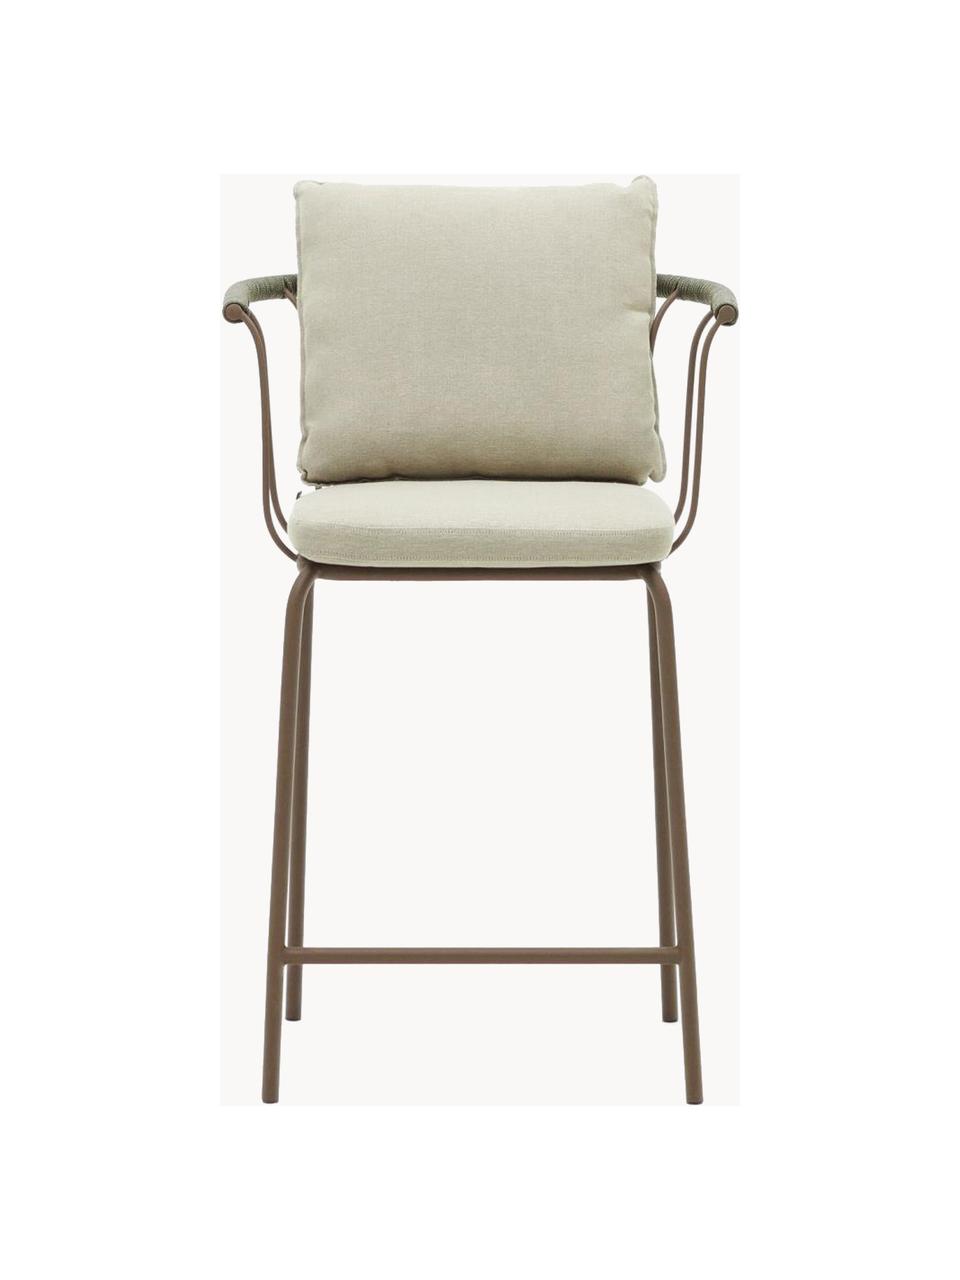 Ogrodowe krzesło barowe z tapicerowanym siedziskiem Jay, Tapicerka: 100% poliester, Stelaż: metal malowany proszkowo, Jasnobeżowa tkanina, greige, S 59 x G 53 cm